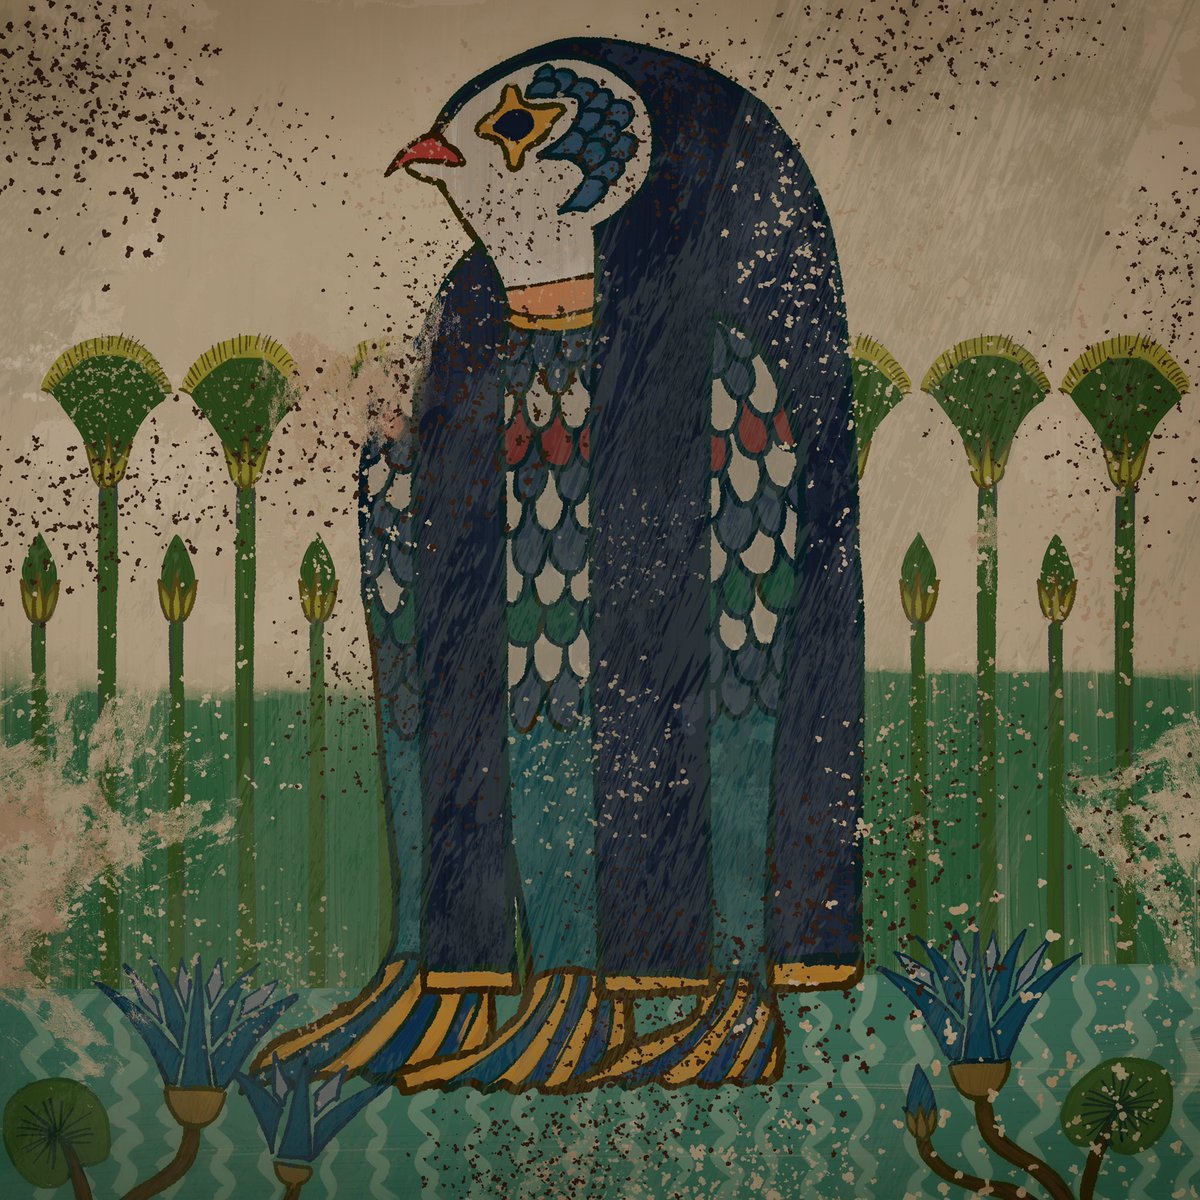 Kinako 壁画イラスト Twitter ನಲ ಲ 壁画のアマビエさん どうしてもこのアマビエさんの背景色等々が違うなと感じたのでブラッシュアップしました アマビエ 古代エジプト風 T Co X7ih2zafke